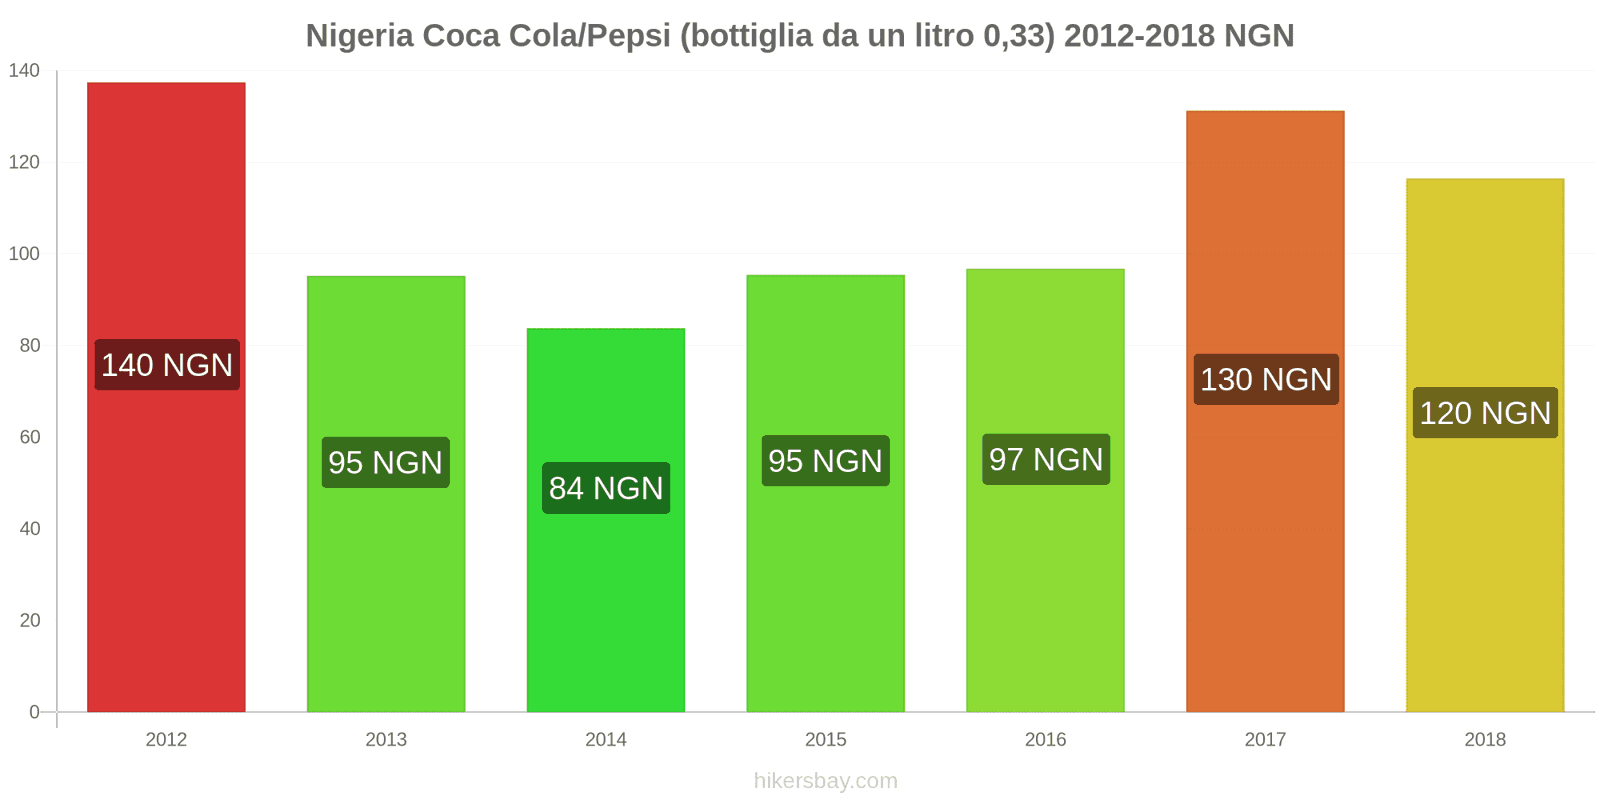 Nigeria cambi di prezzo Coca-Cola/Pepsi (bottiglia da 0.33 litri) hikersbay.com